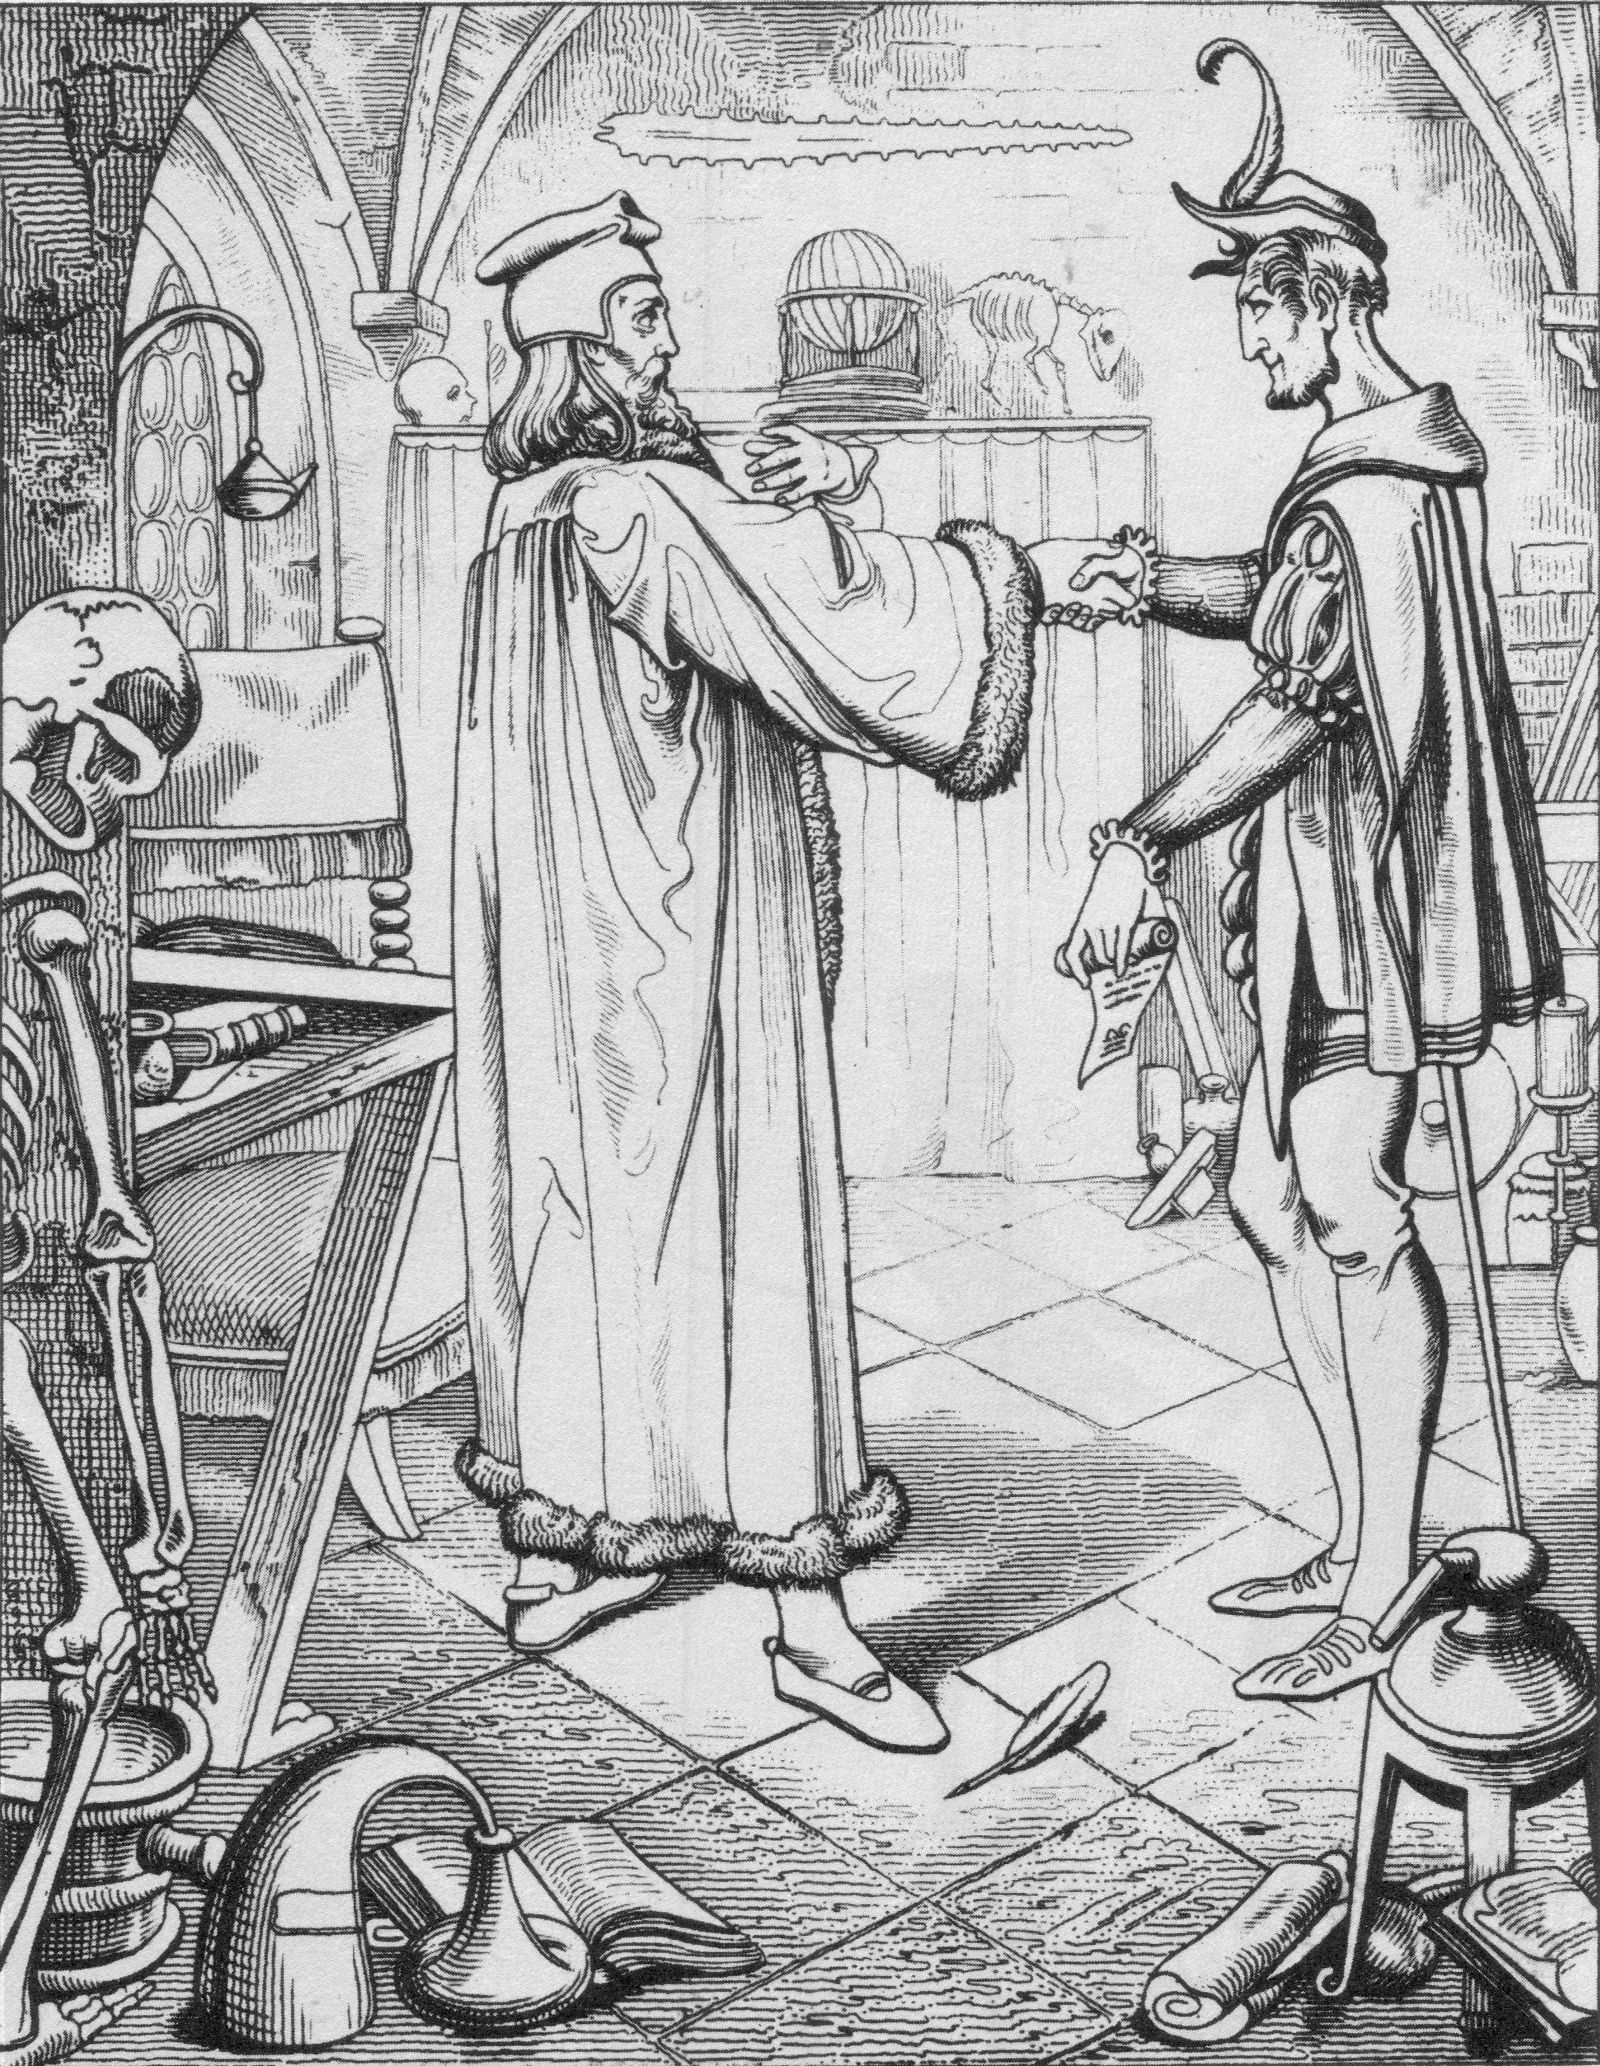 Zeichnung von Julius Nils. Faust und Mephisto drücken sich die Hand in einem gewölbten Raumm in dem viele Laborinstrumente sind.